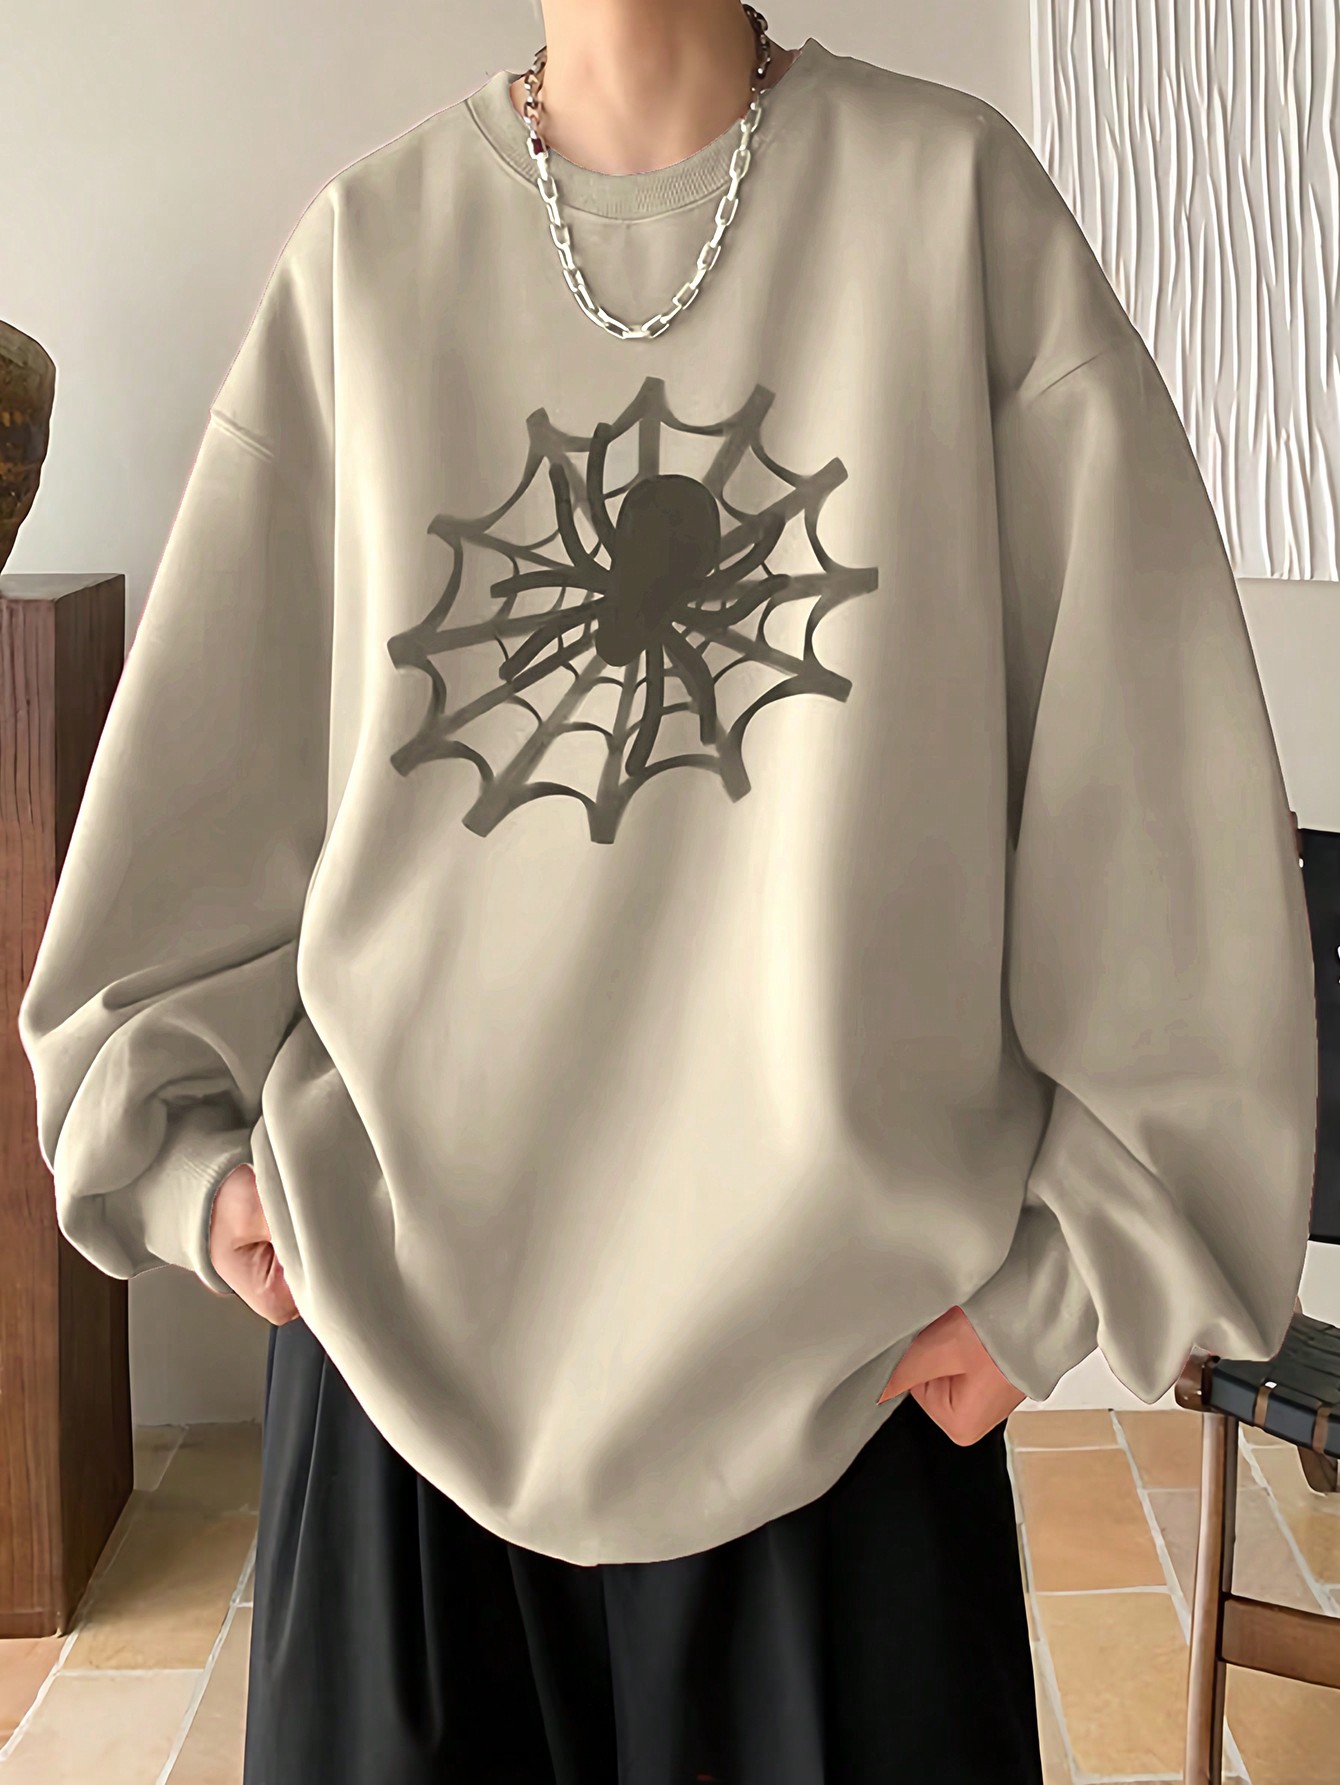 Manfinity EMRG Мужской пуловер свободного кроя с принтом паутины и заниженными плечами, абрикос мужской рюкзак с двумя плечами черный